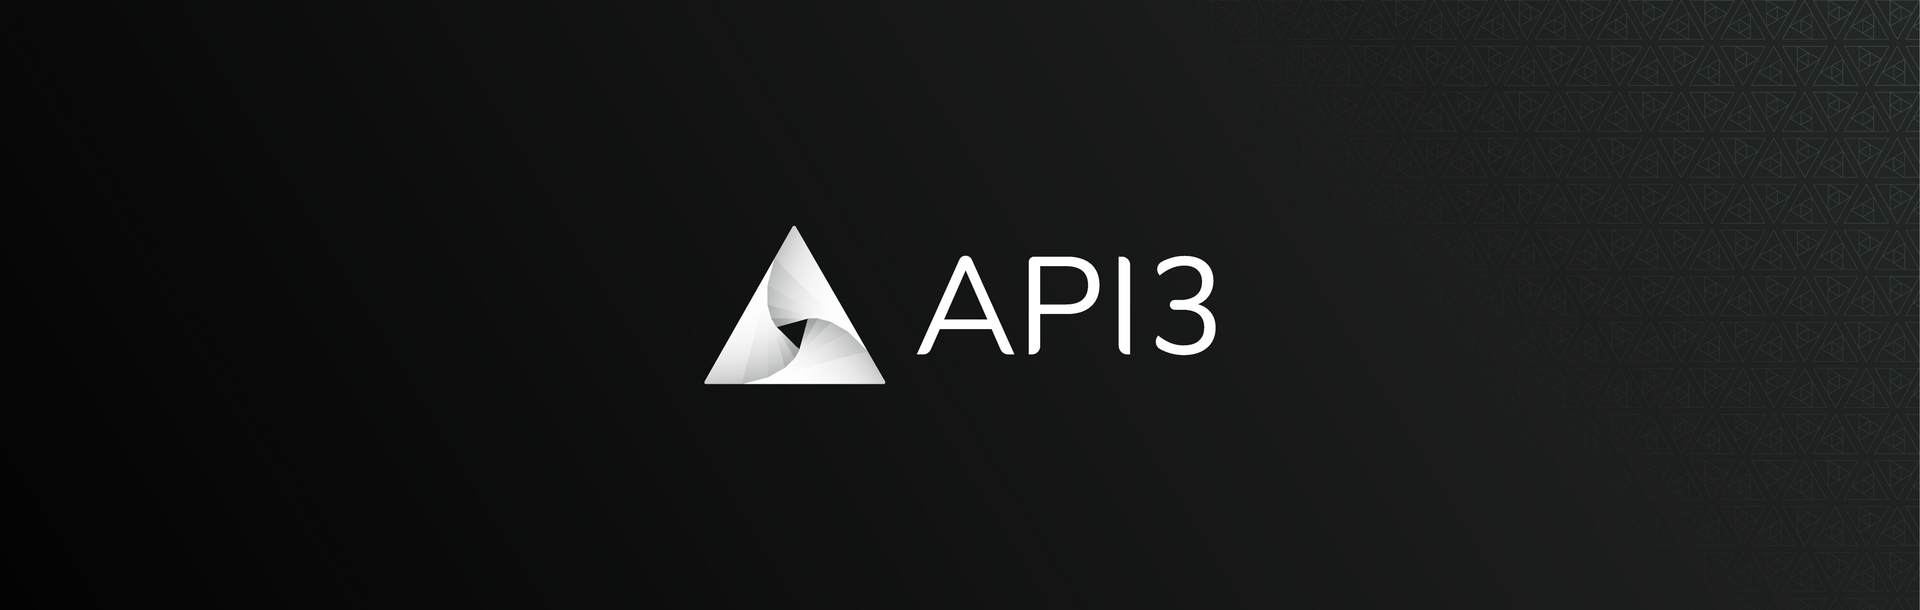 深入了解去中心化的API服务：API3插图1